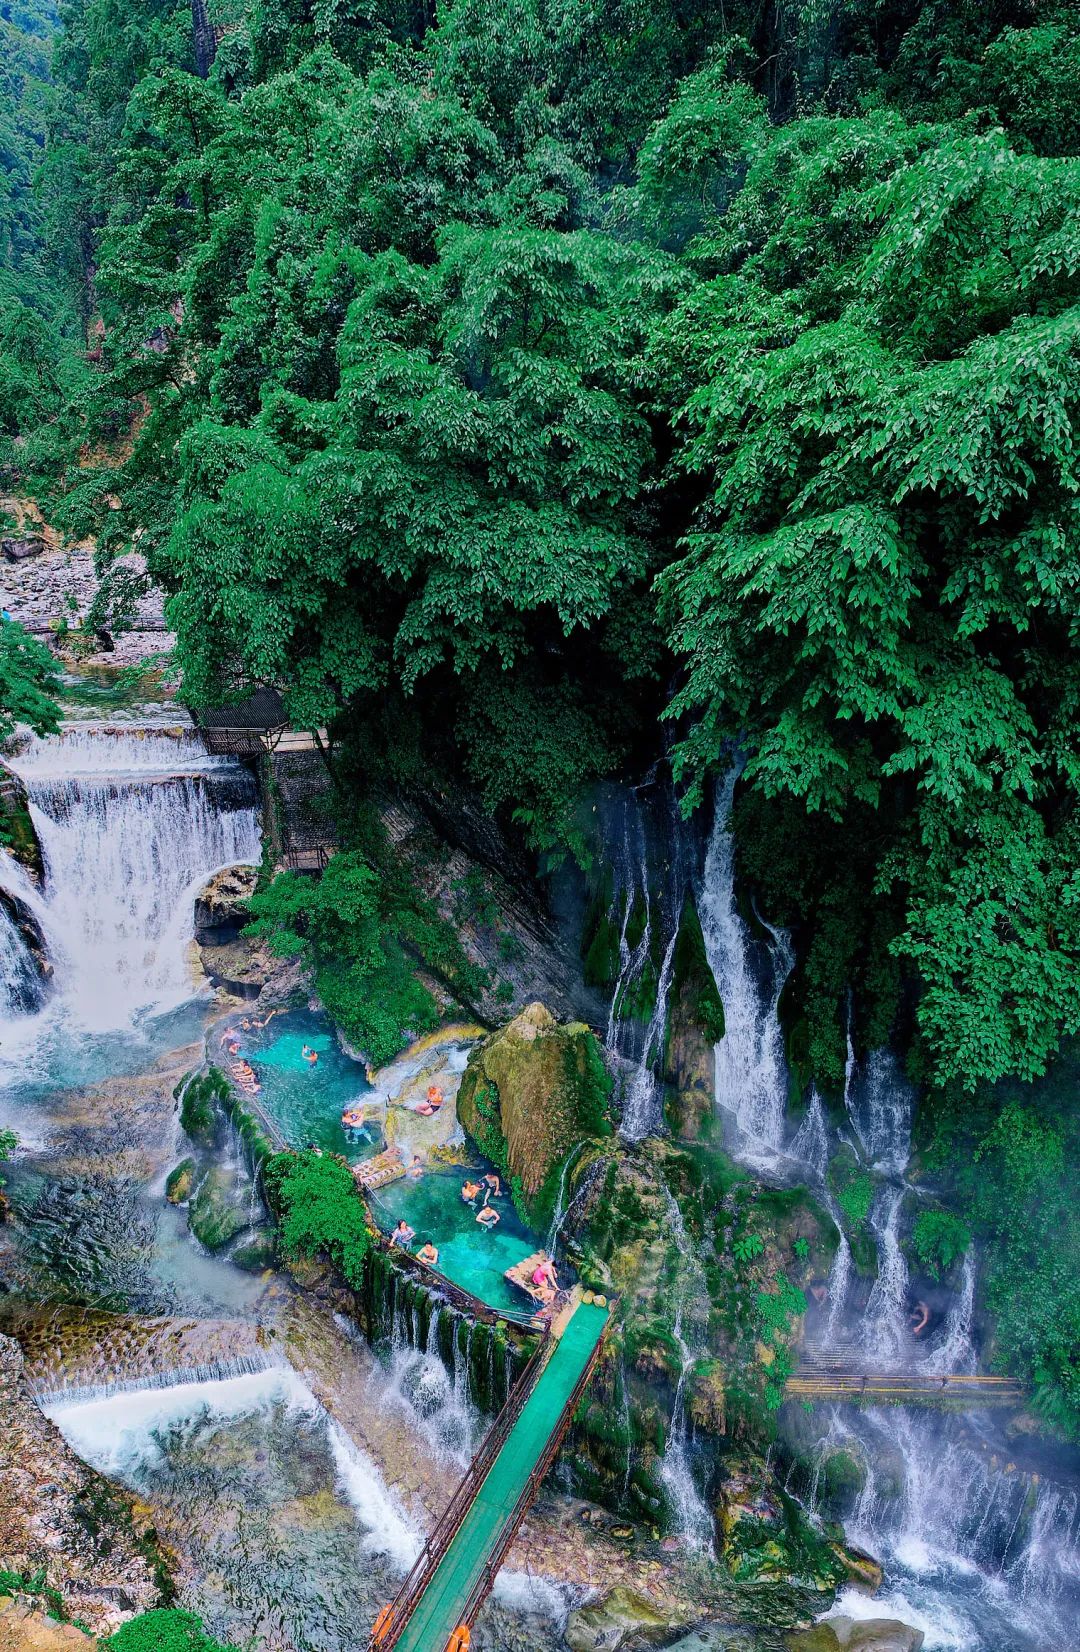 这里享有世界最大温泉瀑布,世界仅有的温泉群岛,世界仅有的悬崖温泉的